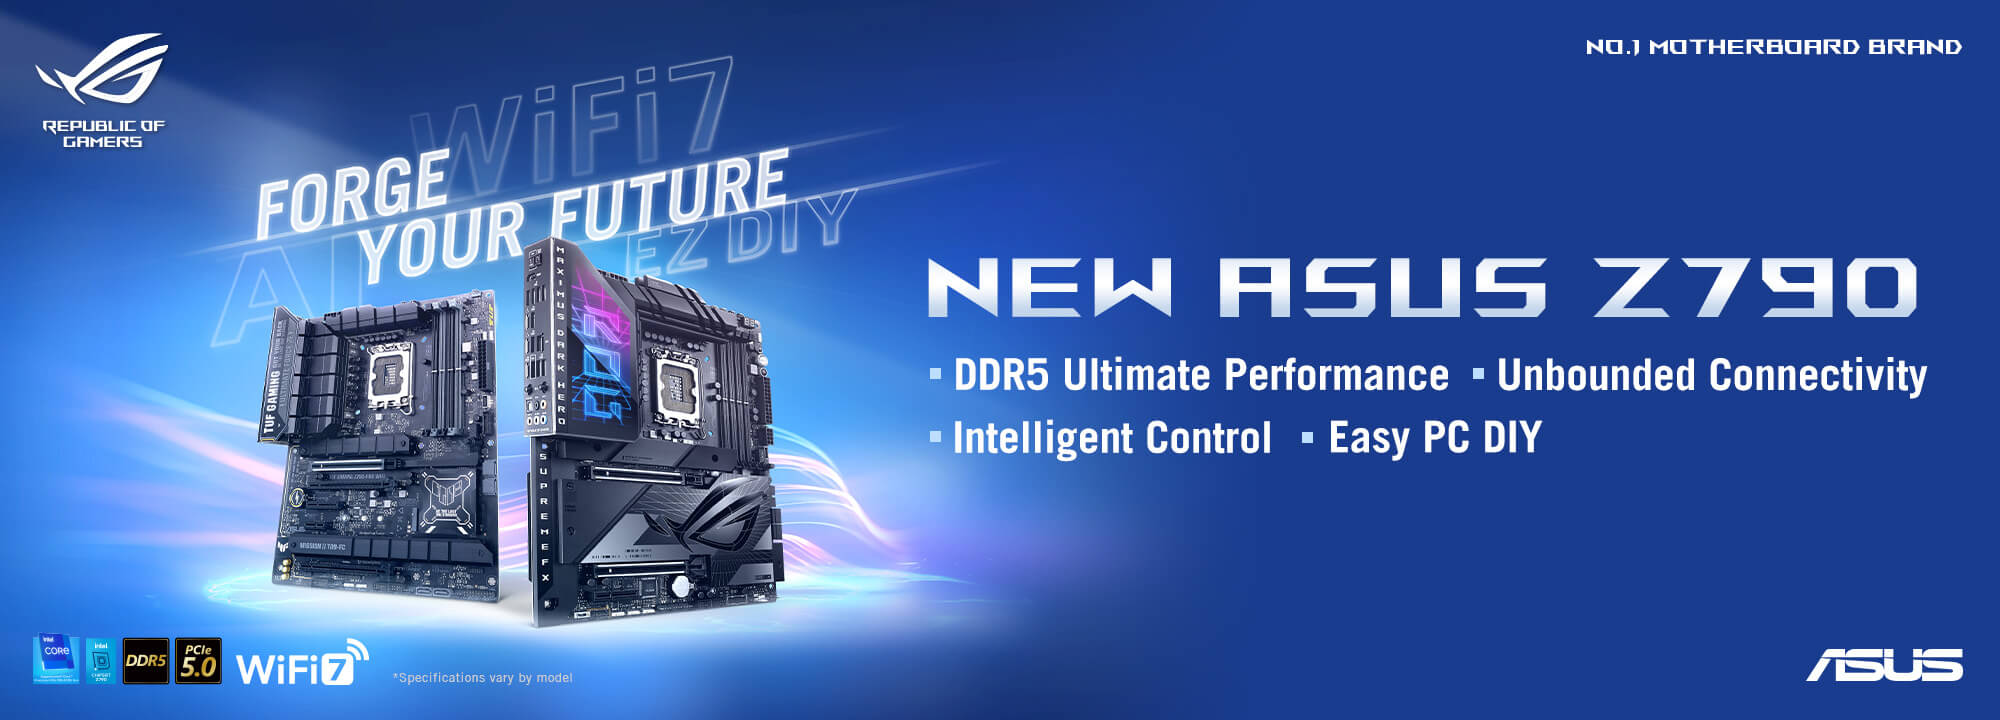 FORJA TU FUTURO - LO NUEVO DE ASUS Z790, con el máximo rendimiento DDR5, conectividad sin límites, control inteligente y montaje sencillo.